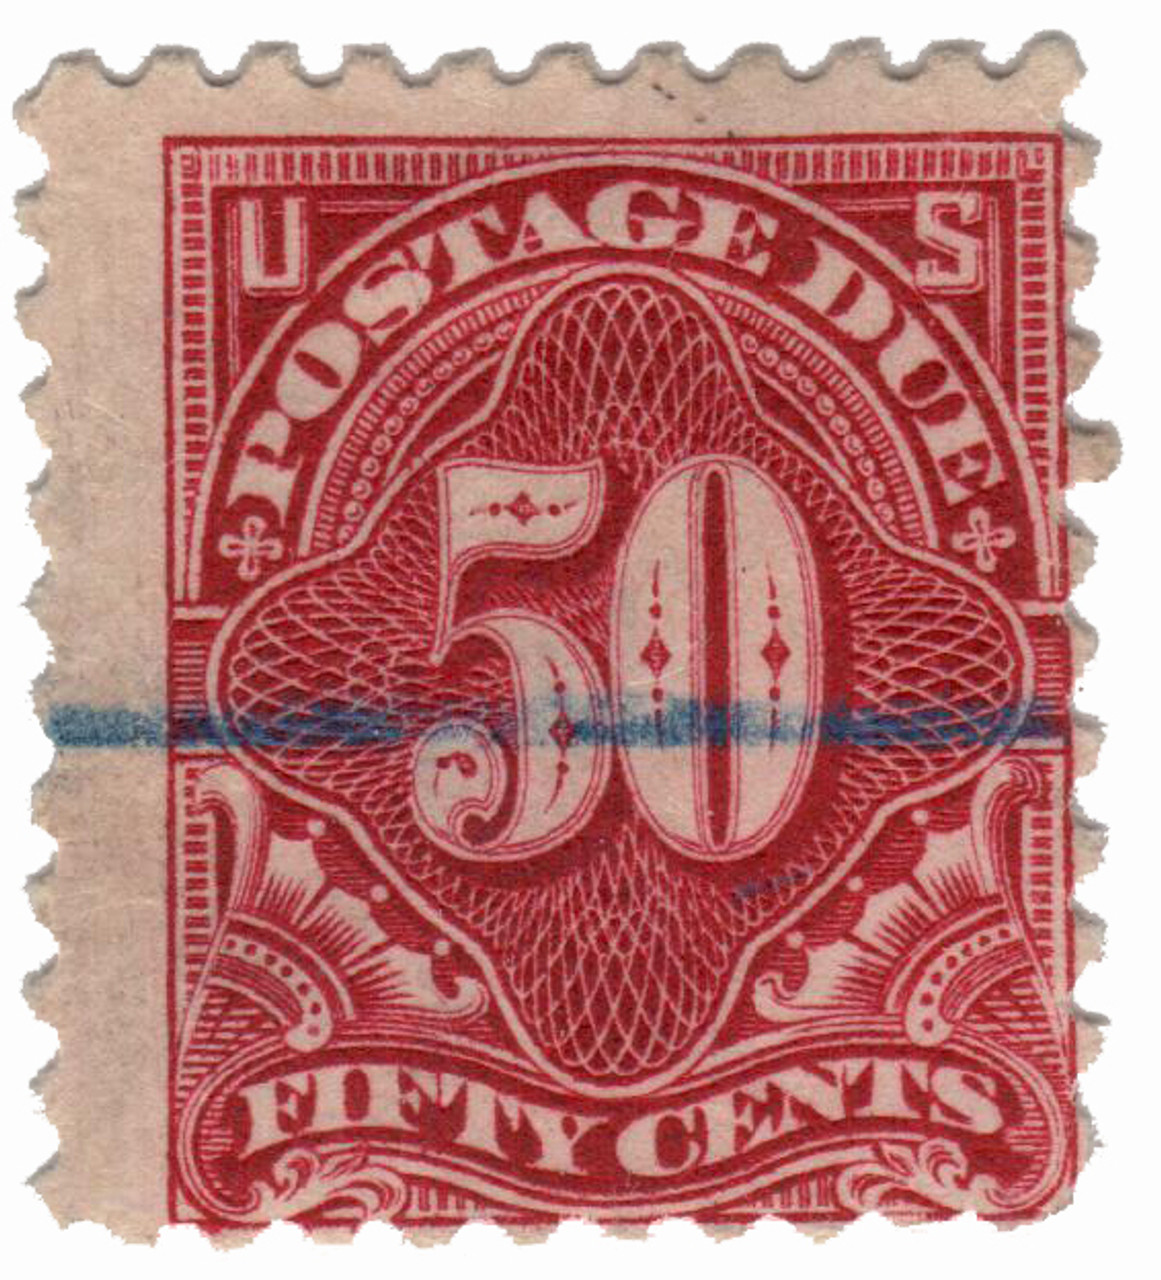 J58 - 1914 50c Postage Due Stamp - carmine lake - Mystic Stamp Company